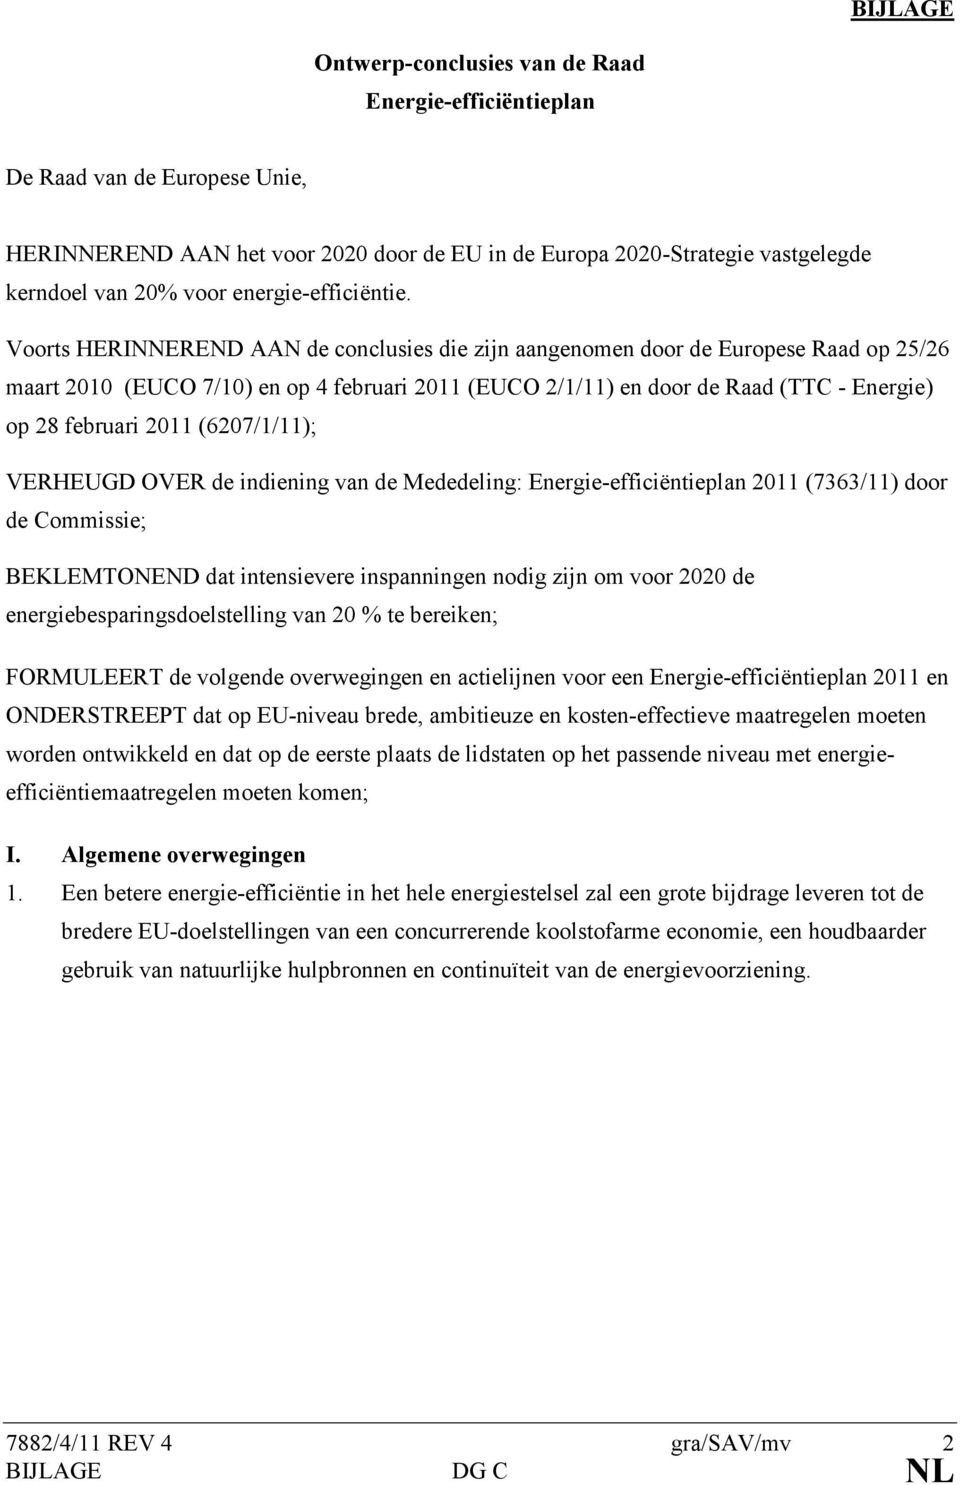 Voorts HERINNEREND AAN de conclusies die zijn aangenomen door de Europese Raad op 25/26 maart 2010 (EUCO 7/10) en op 4 februari 2011 (EUCO 2/1/11) en door de Raad (TTC - Energie) op 28 februari 2011